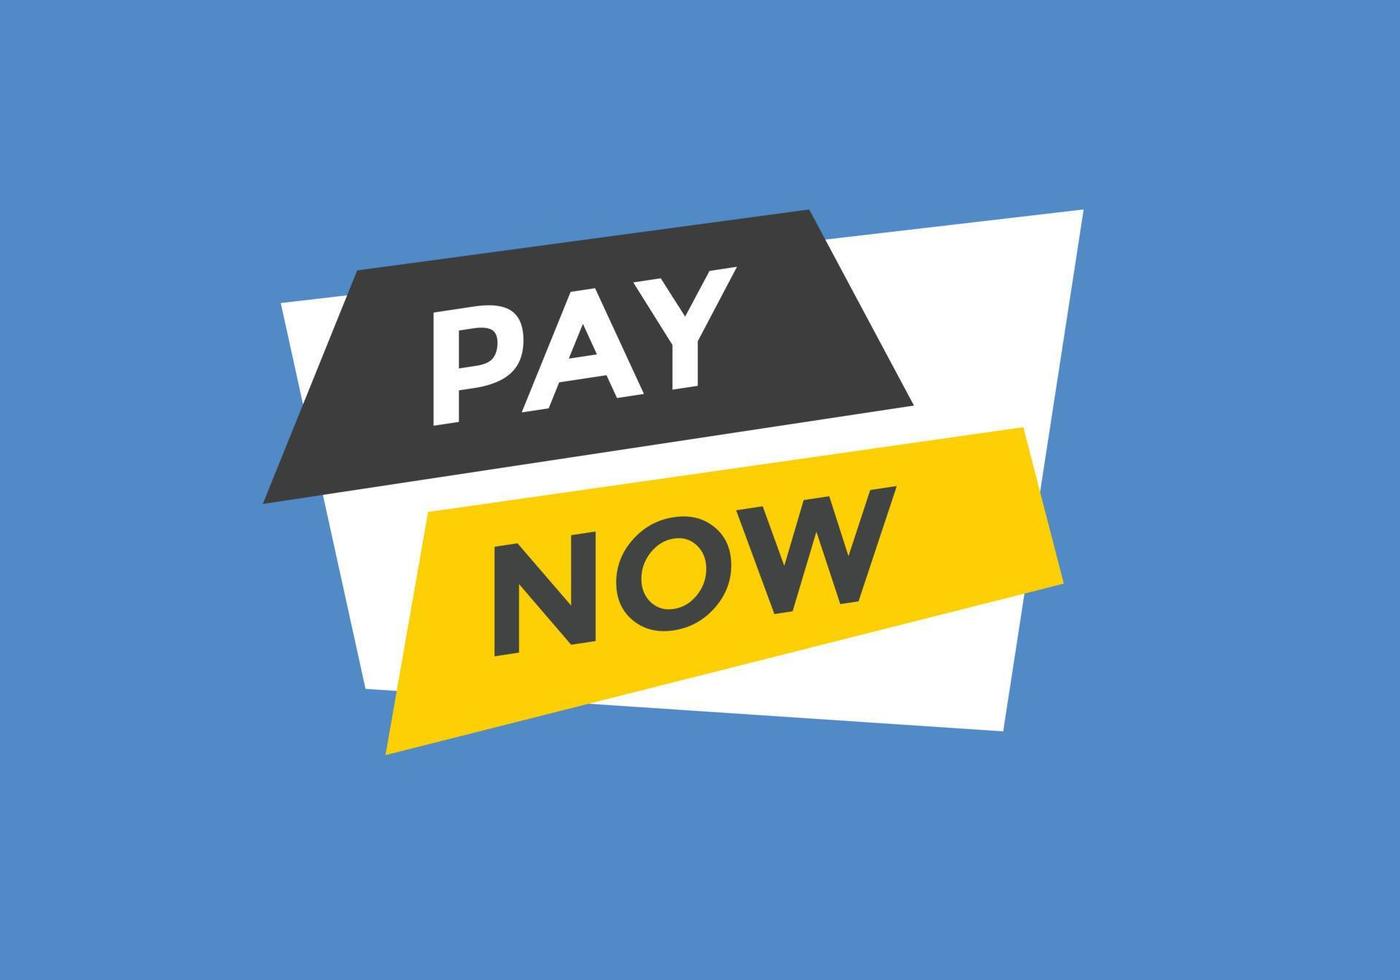 Schaltfläche "Jetzt bezahlen". zahlen Sie jetzt Text-Web-Banner-Vorlage. Zeichen-Symbol-Banner vektor